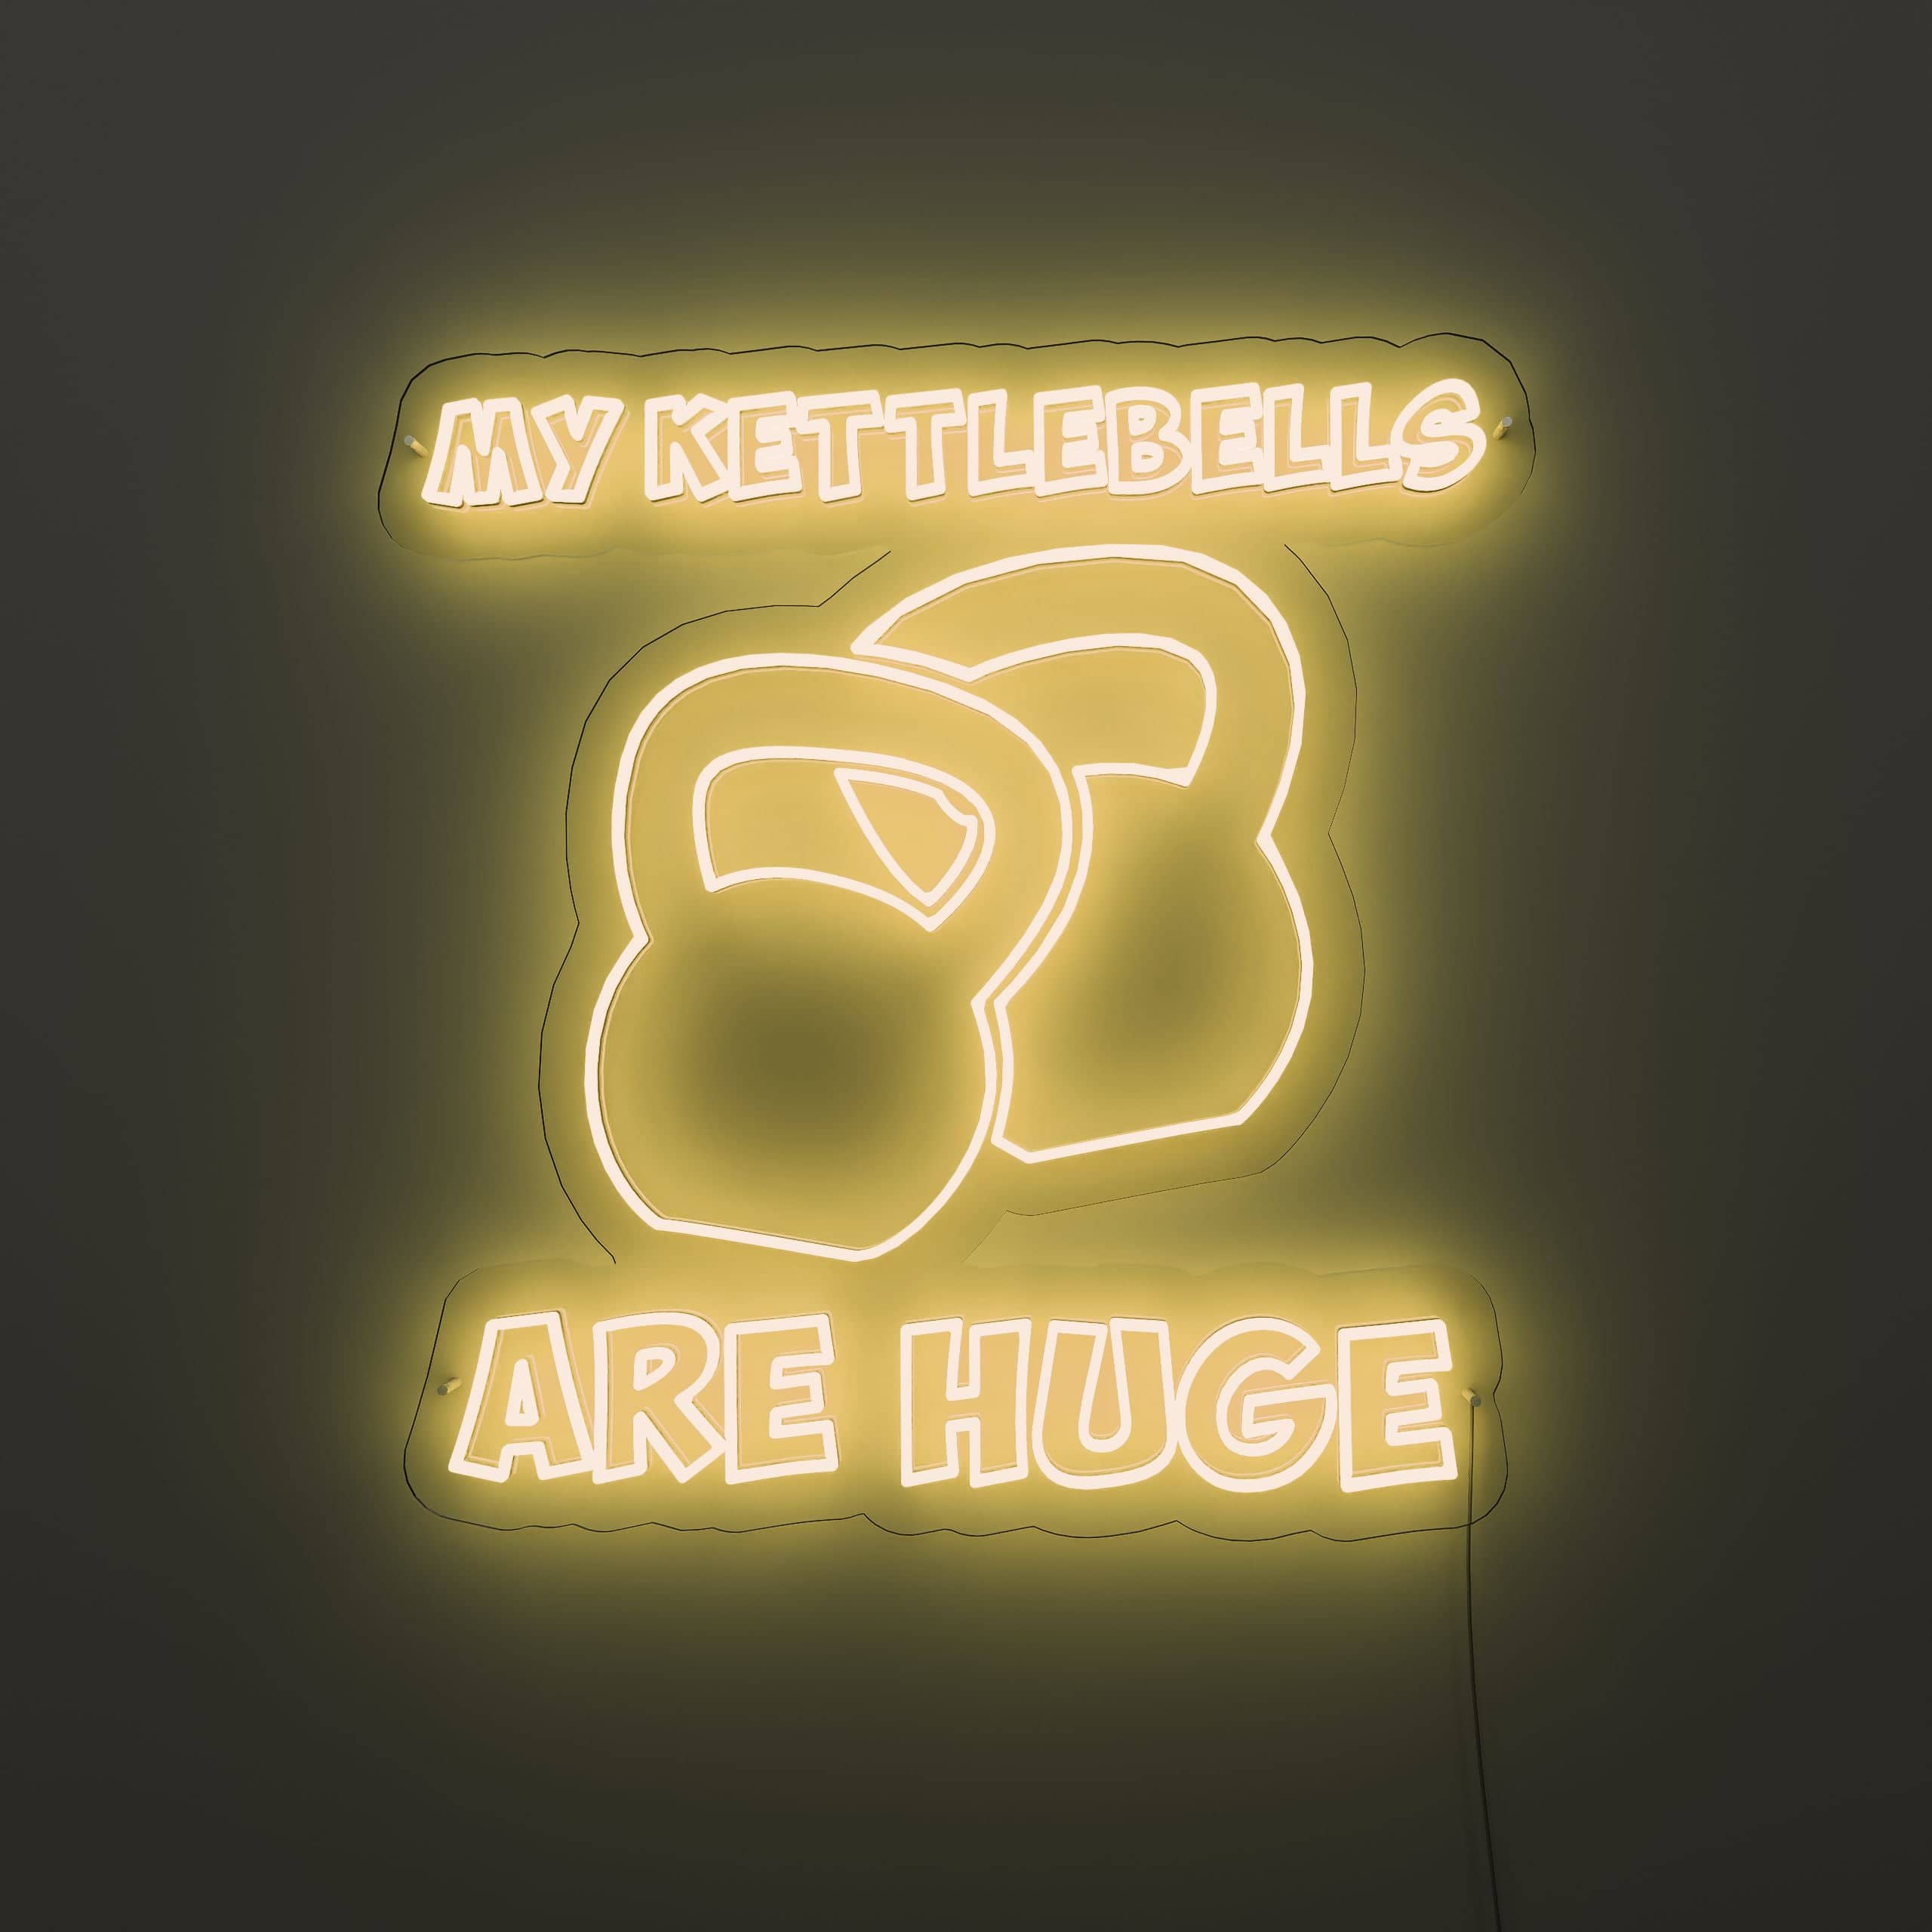 heavyweight-kettlebells-neon-sign-lite